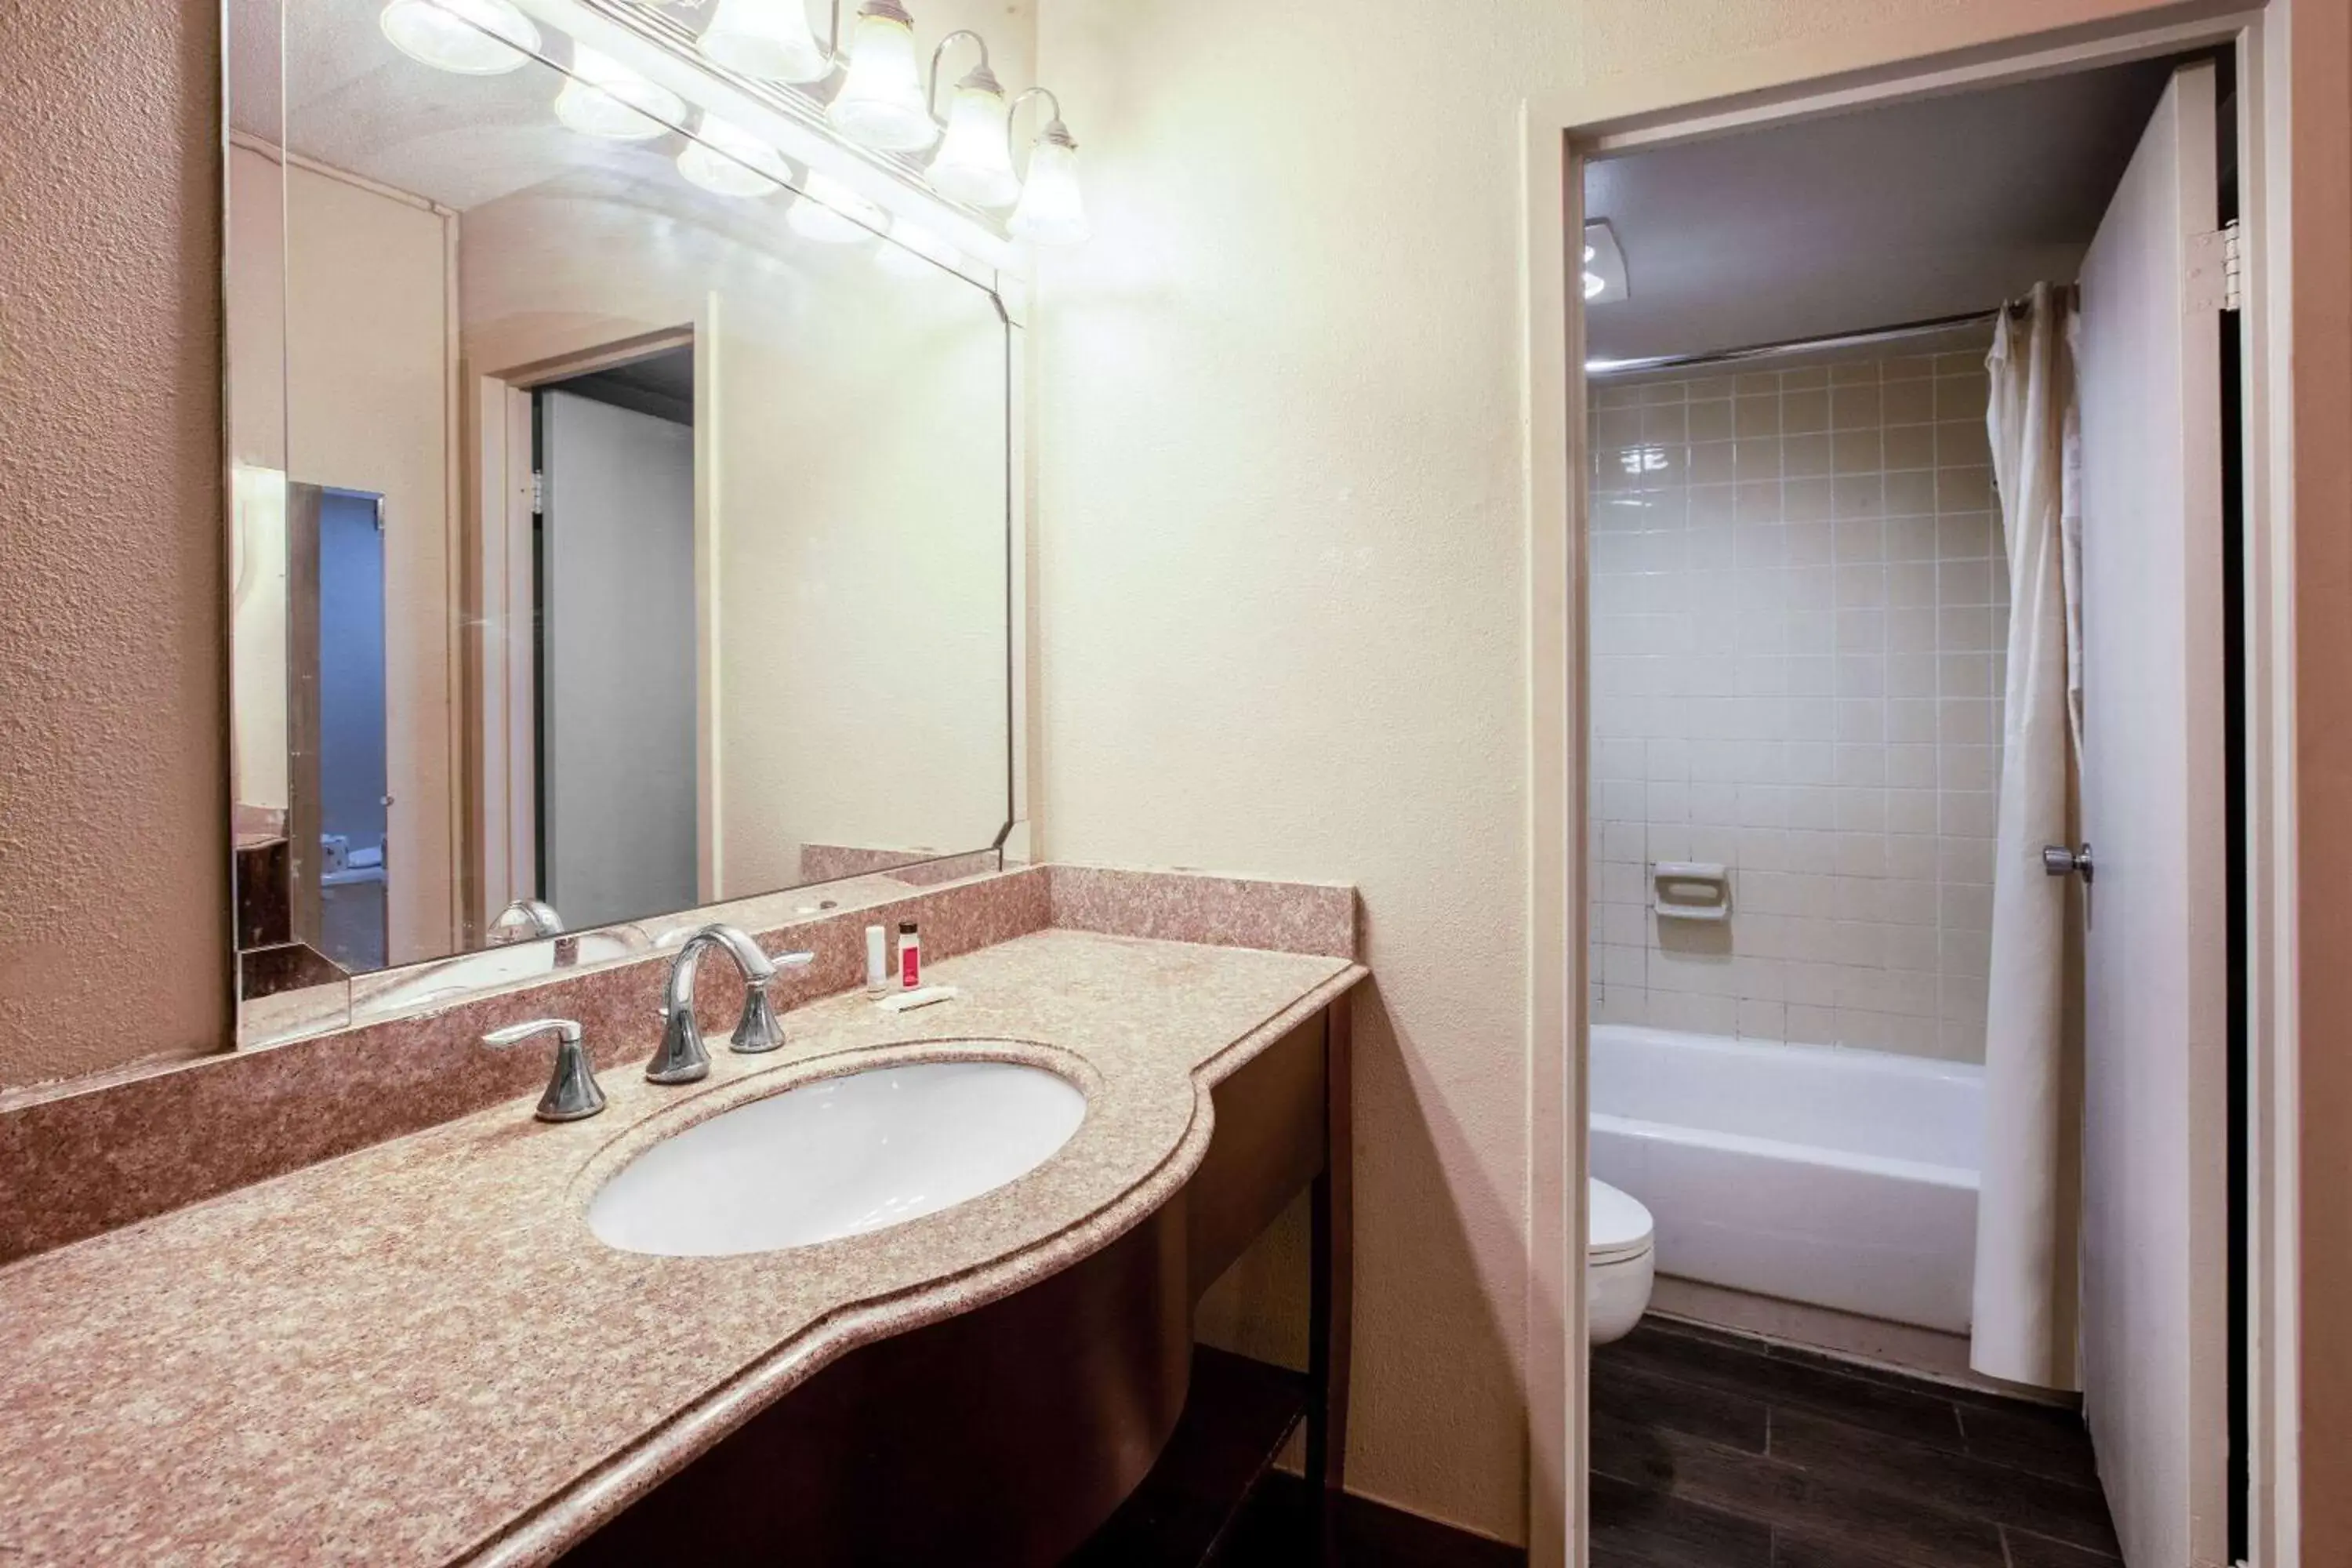 TV and multimedia, Bathroom in Baymont by Wyndham Northwood